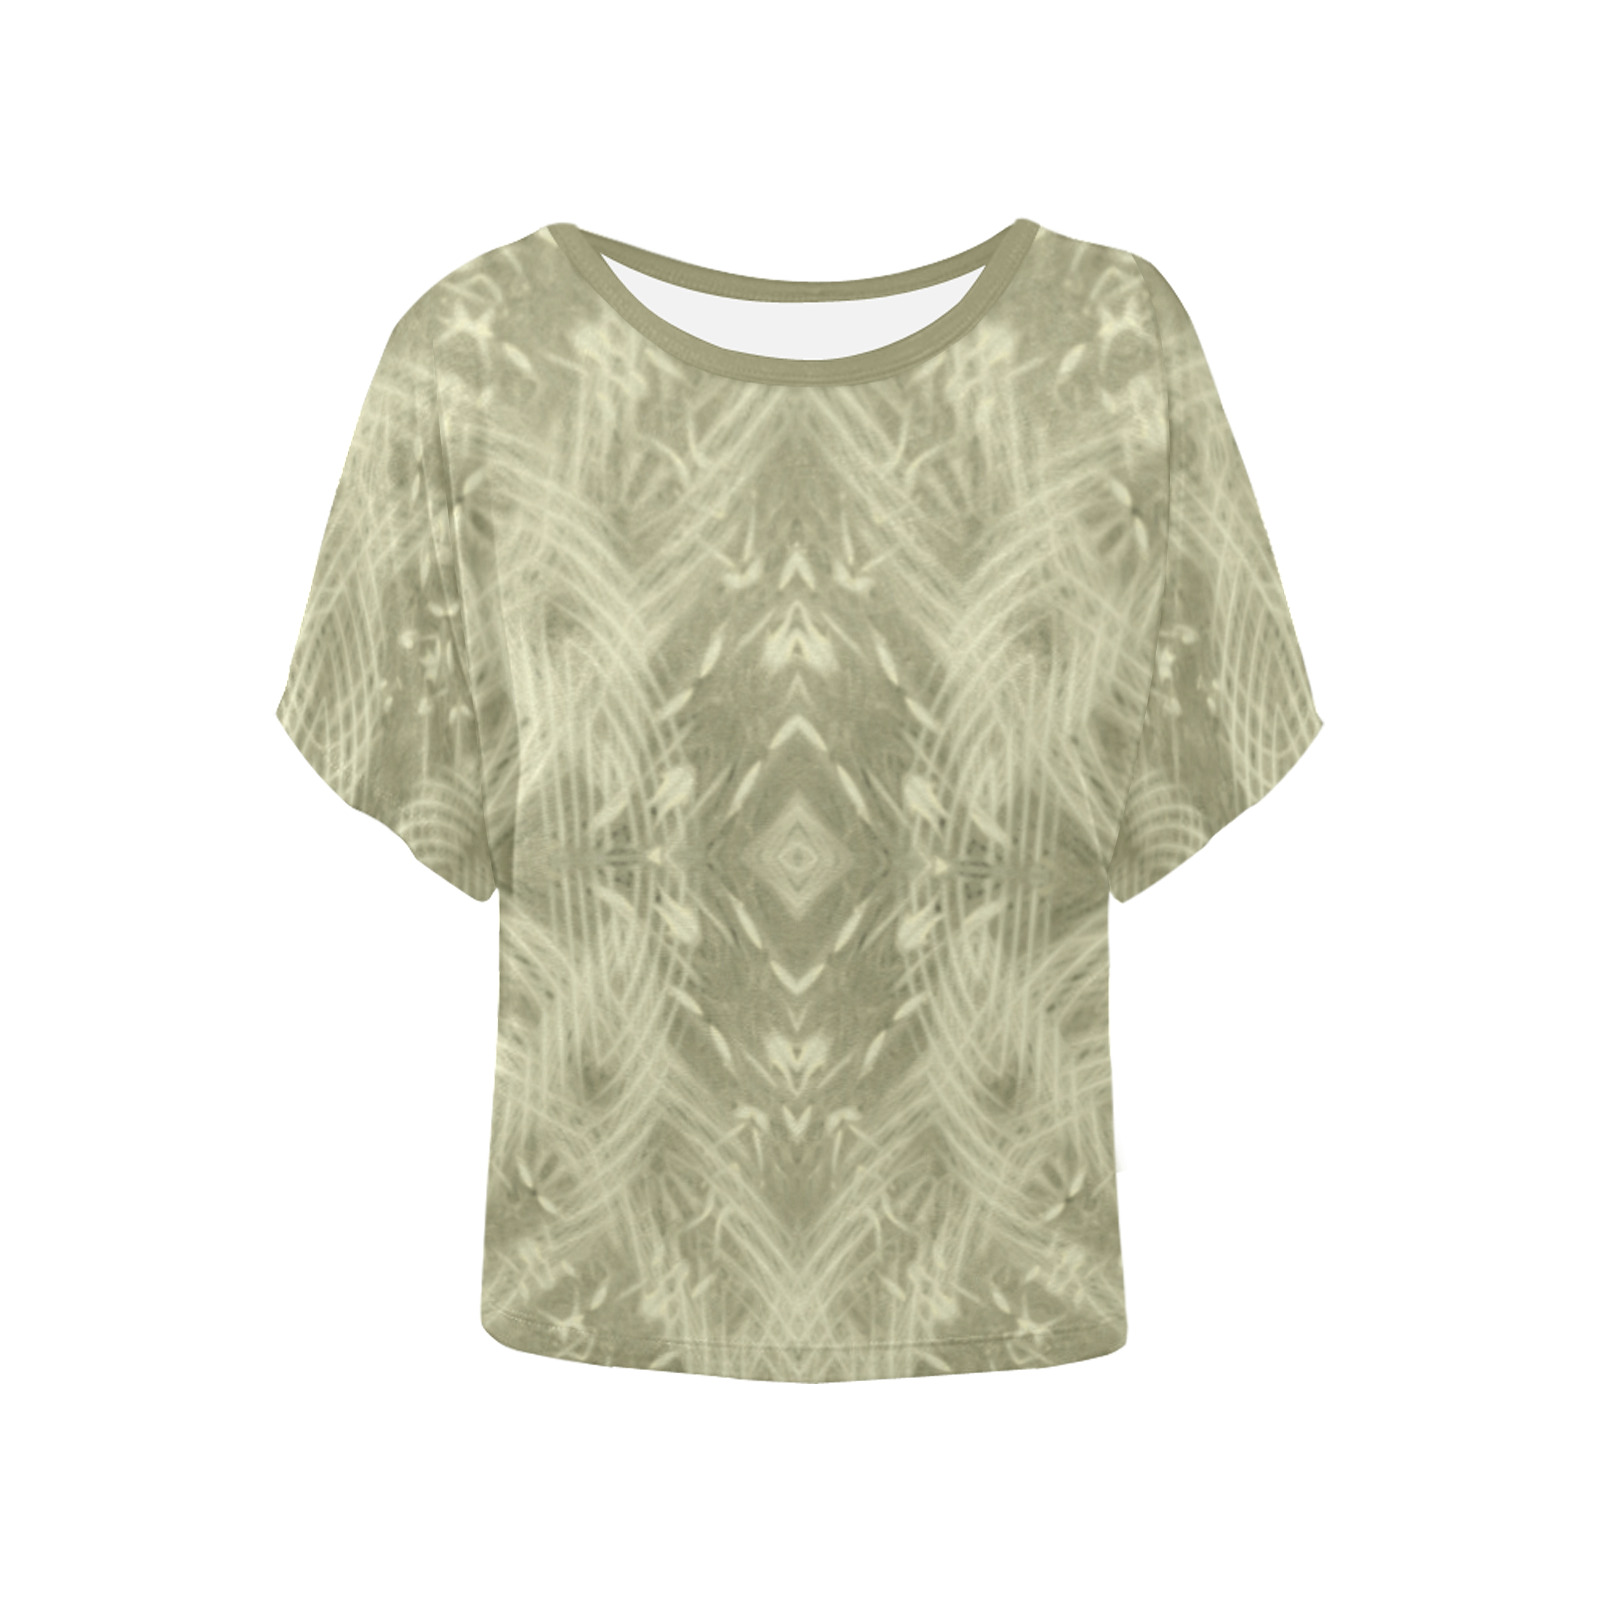 Dandelion Field - beige white tan geometric flower pattern Women's Batwing-Sleeved Blouse T shirt (Model T44)